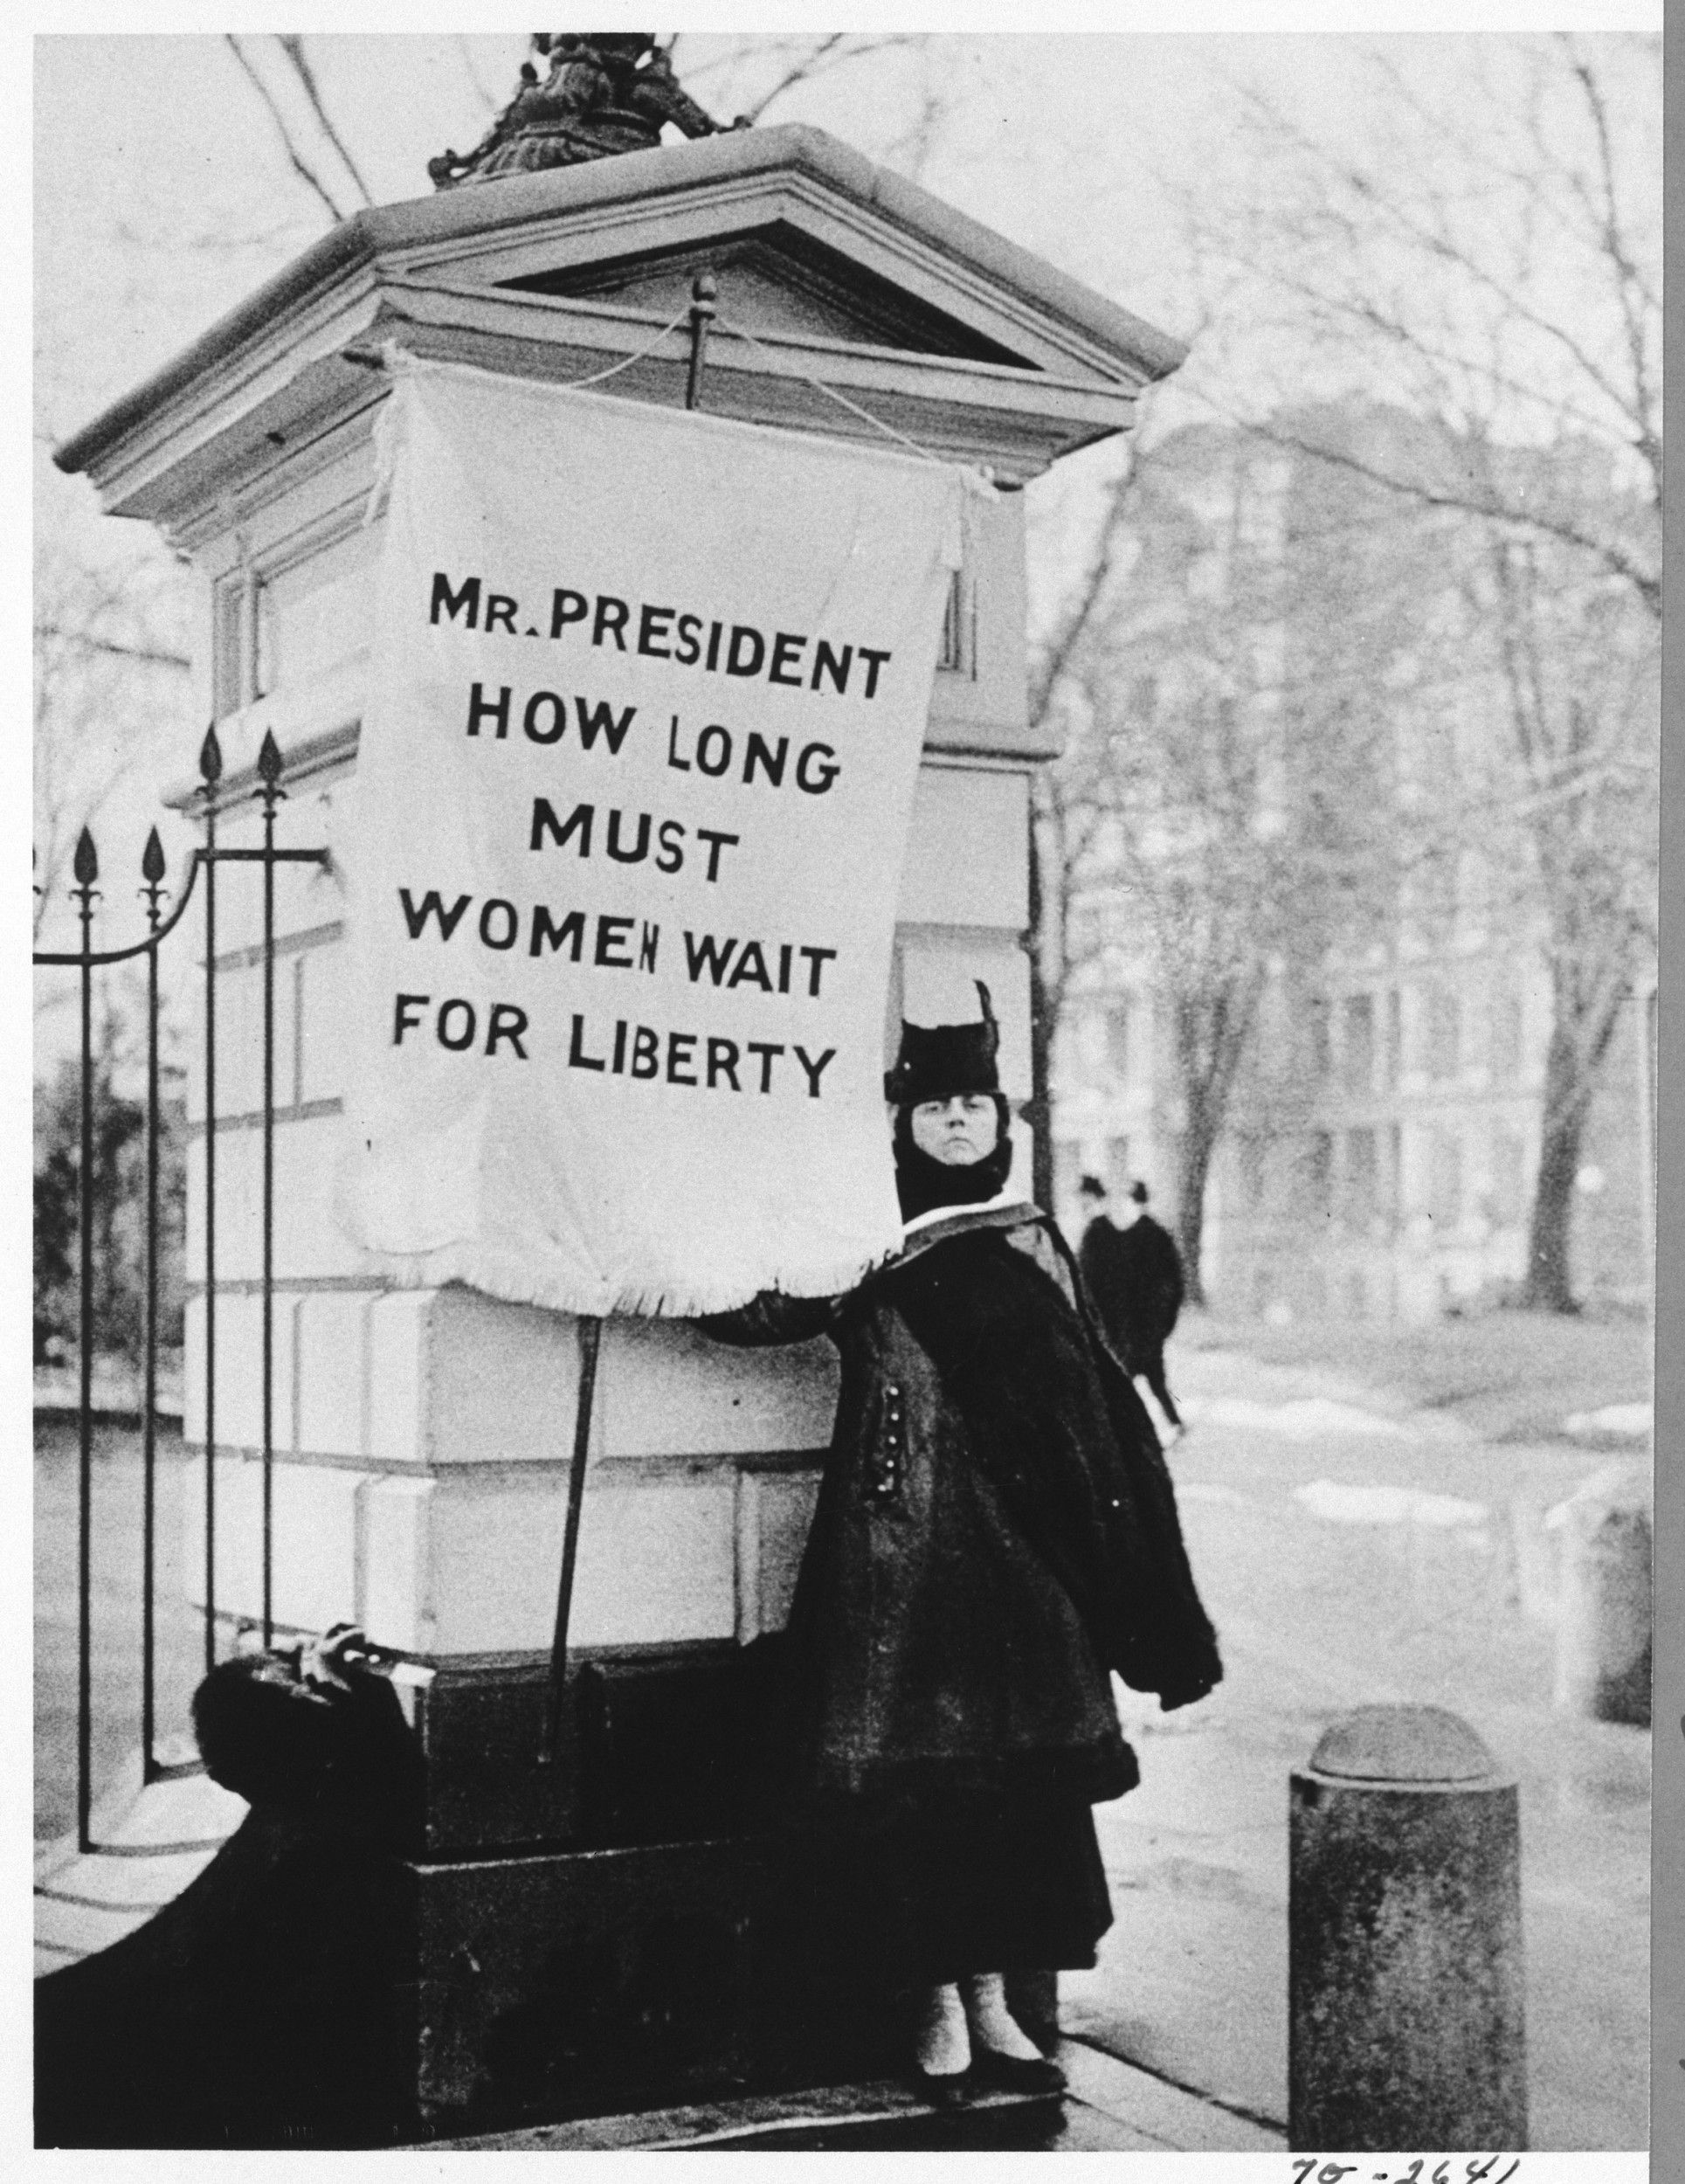   Flag Bearer for Women's Rights Standing Near White House  